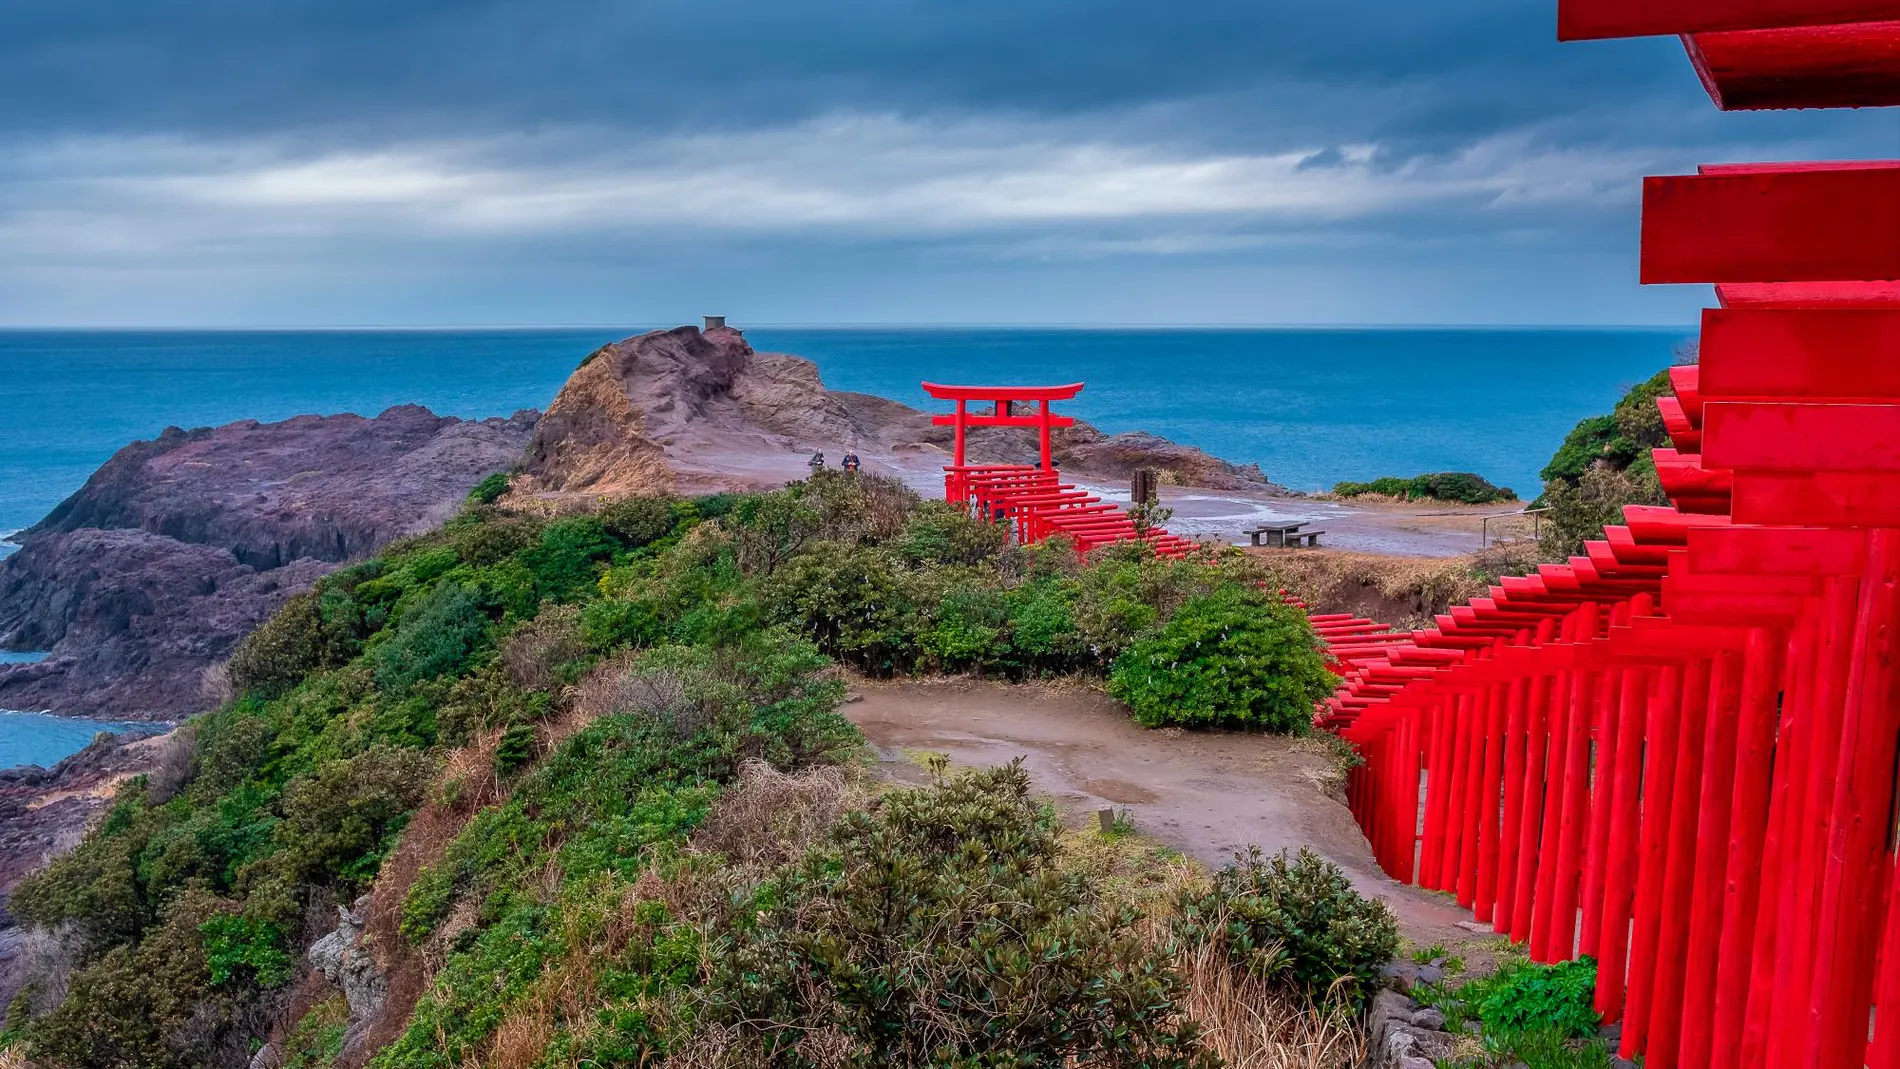 Los torii del santuario sintoísta Motonosumi Inari nos conducen hasta el borde mismo del mar